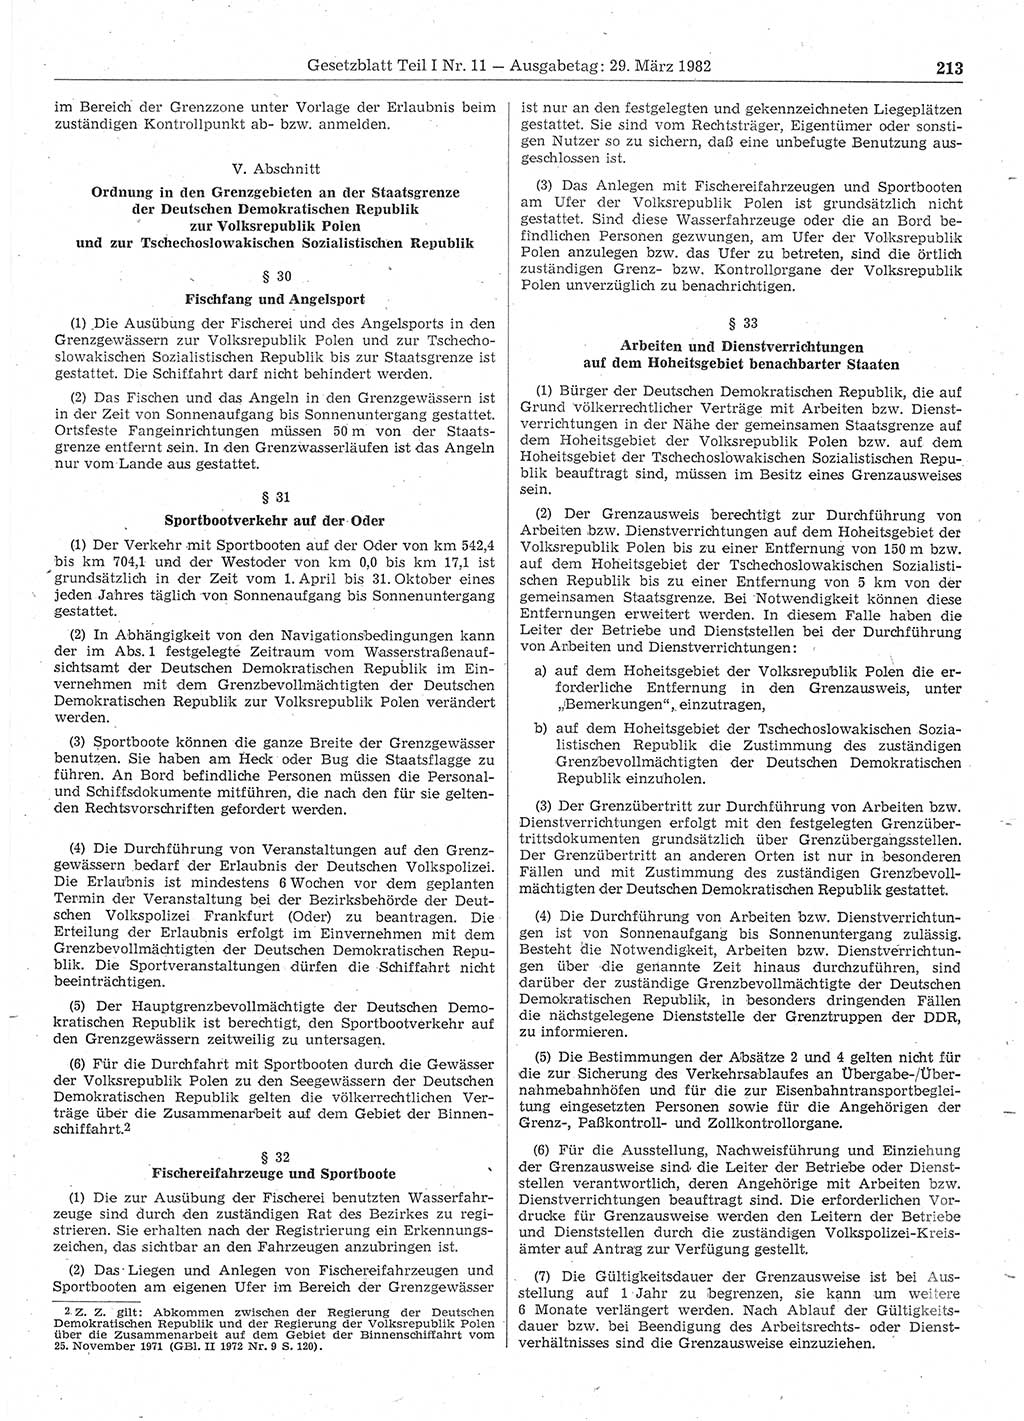 Gesetzblatt (GBl.) der Deutschen Demokratischen Republik (DDR) Teil Ⅰ 1982, Seite 213 (GBl. DDR Ⅰ 1982, S. 213)